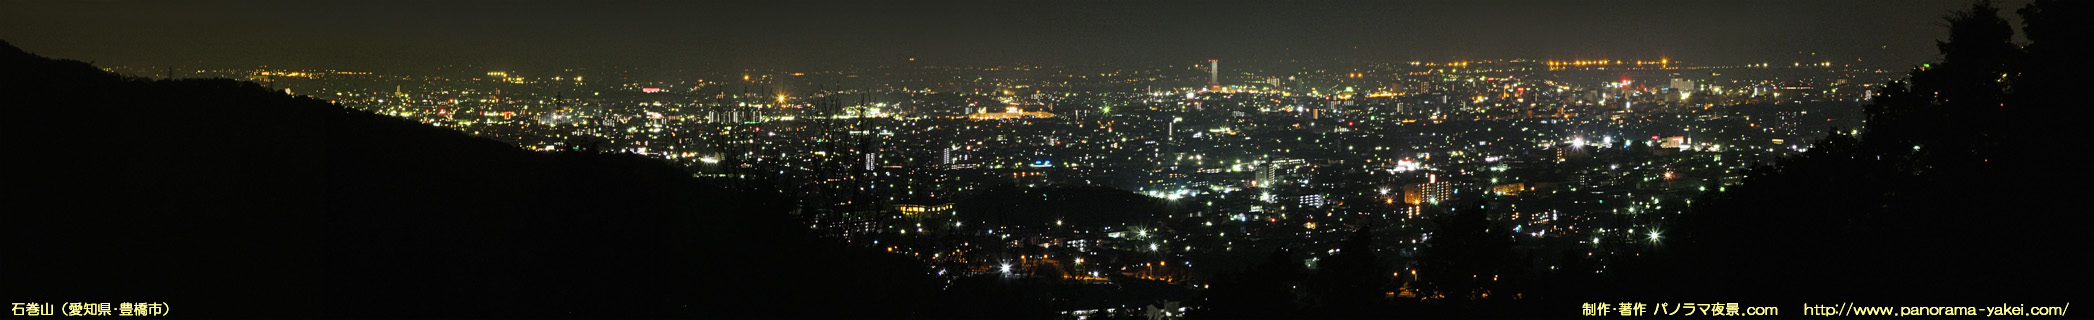 石巻山からのパノラマ夜景写真